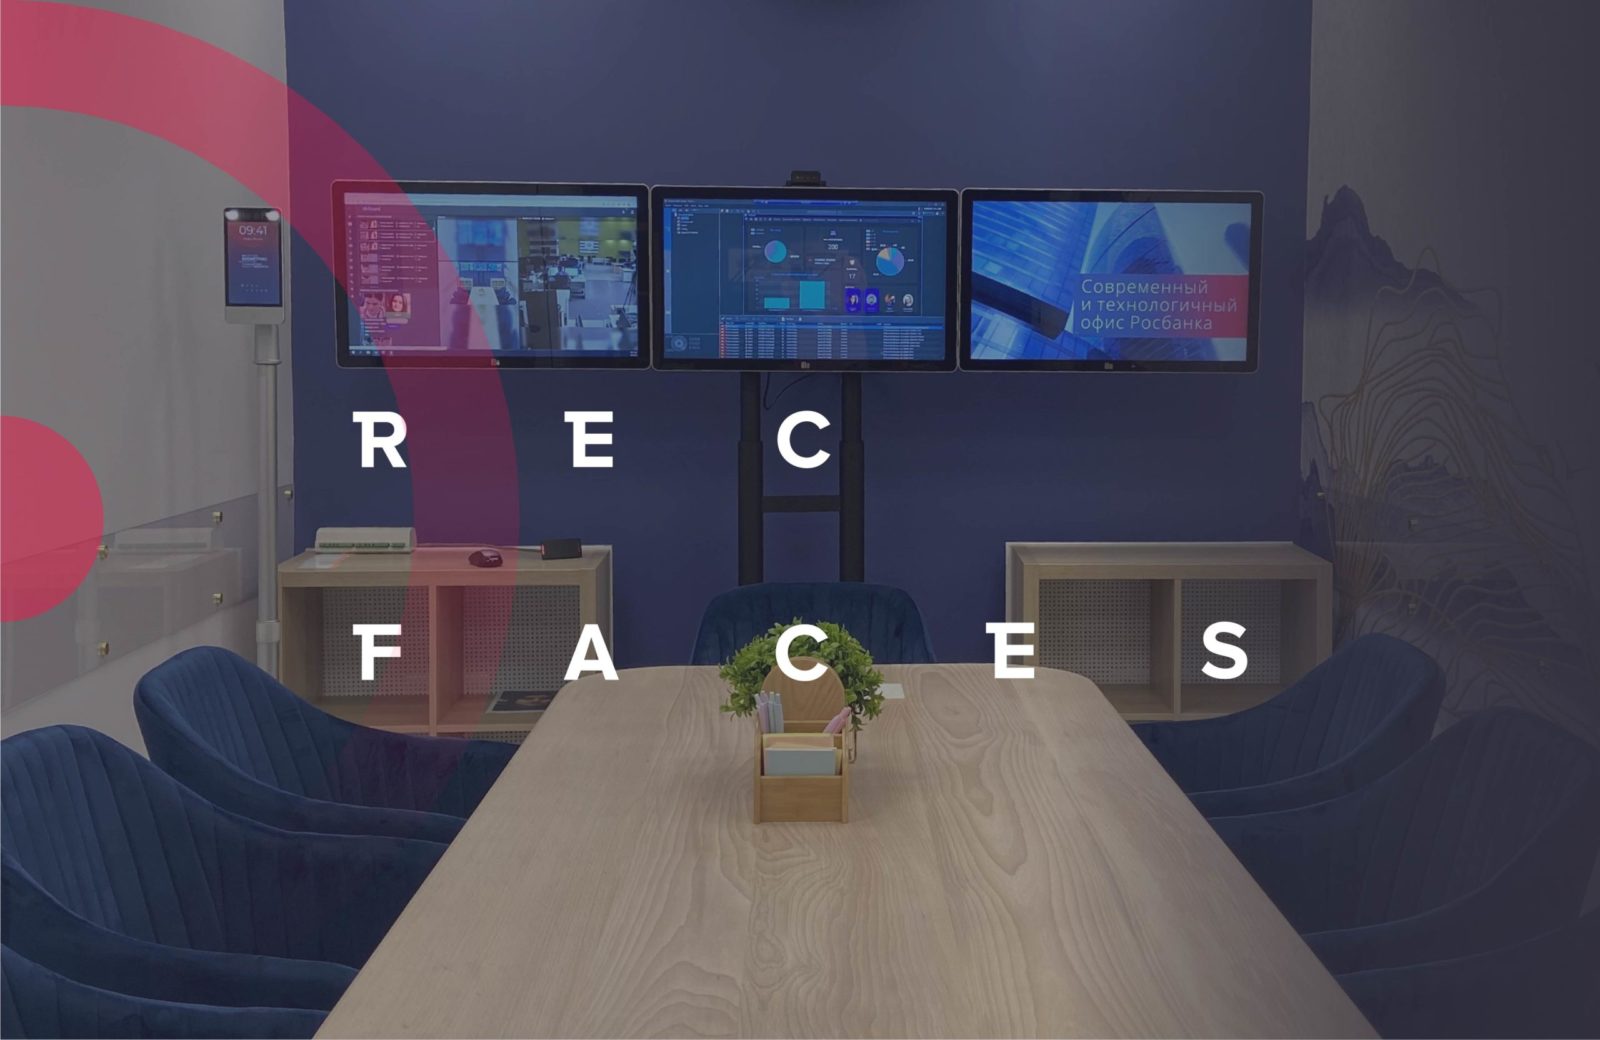  » Компания RecFaces открыла Учебный центр для IT-специалистов в области лицевой биометрии